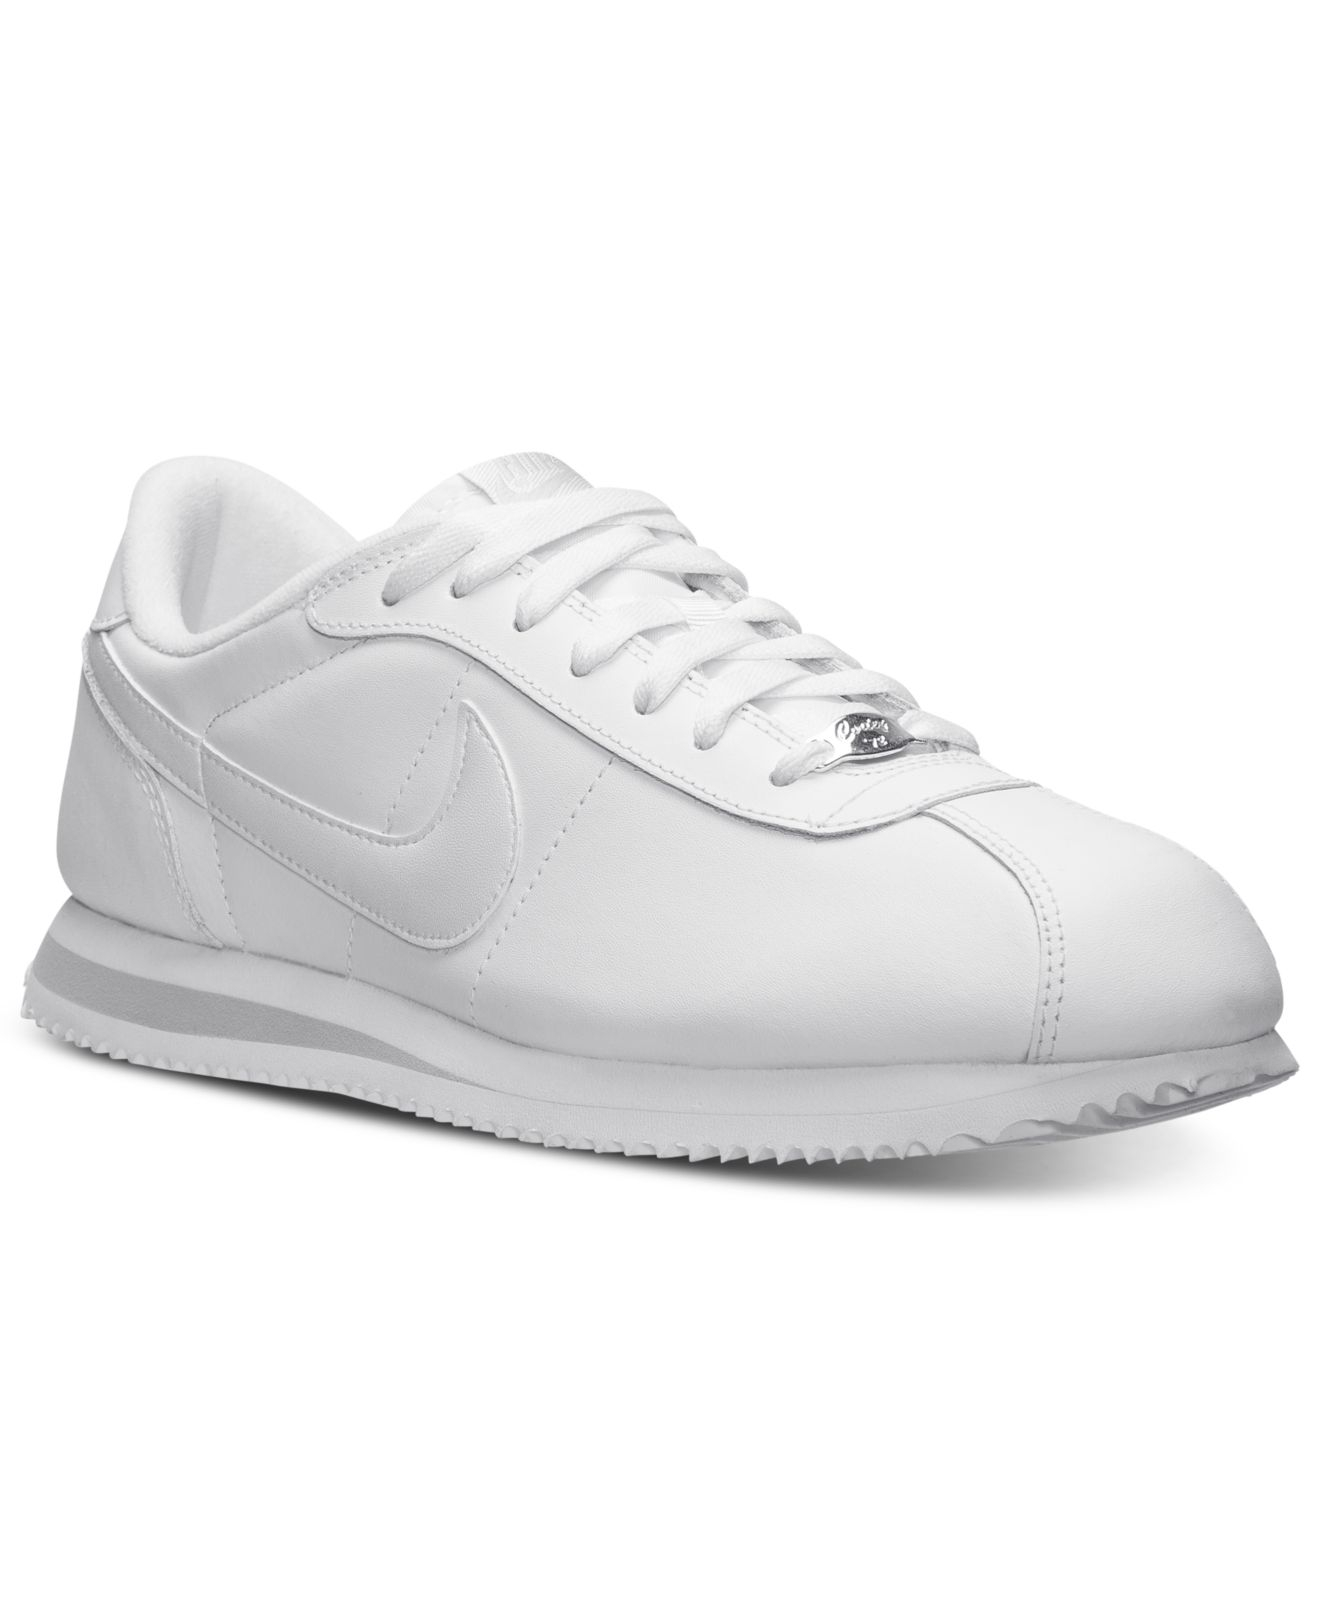 Nike Cortez Basic Leather '06 Mens' Fashion Shoes White/Midnight